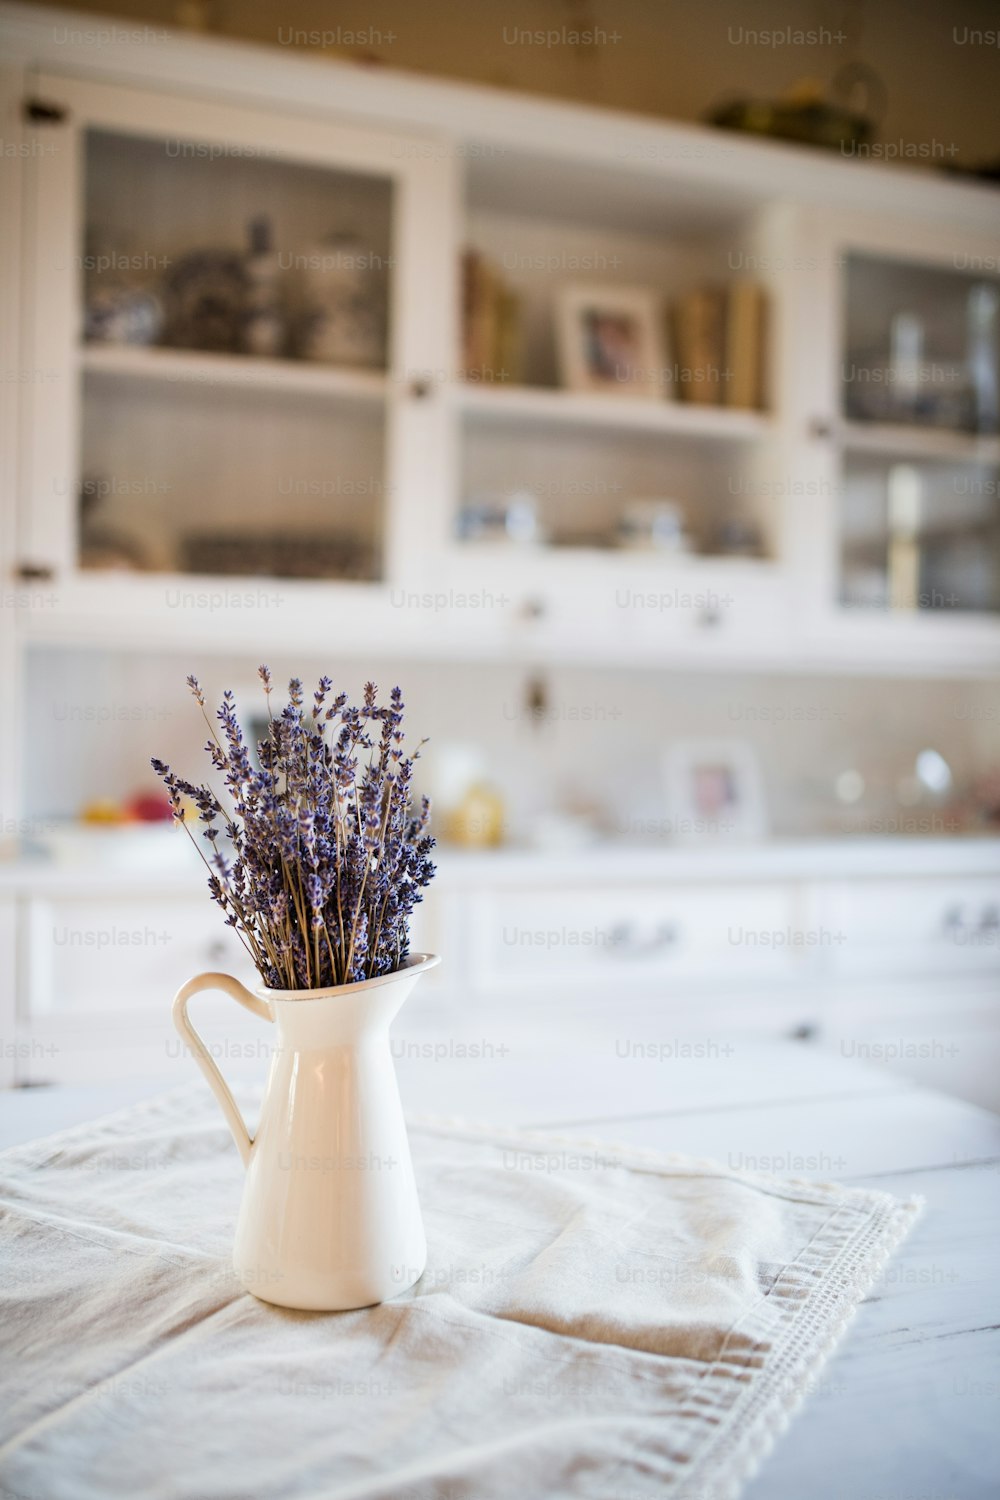 Cacho de lavanda seco em um vaso branco sobre a mesa em uma cozinha vintage.